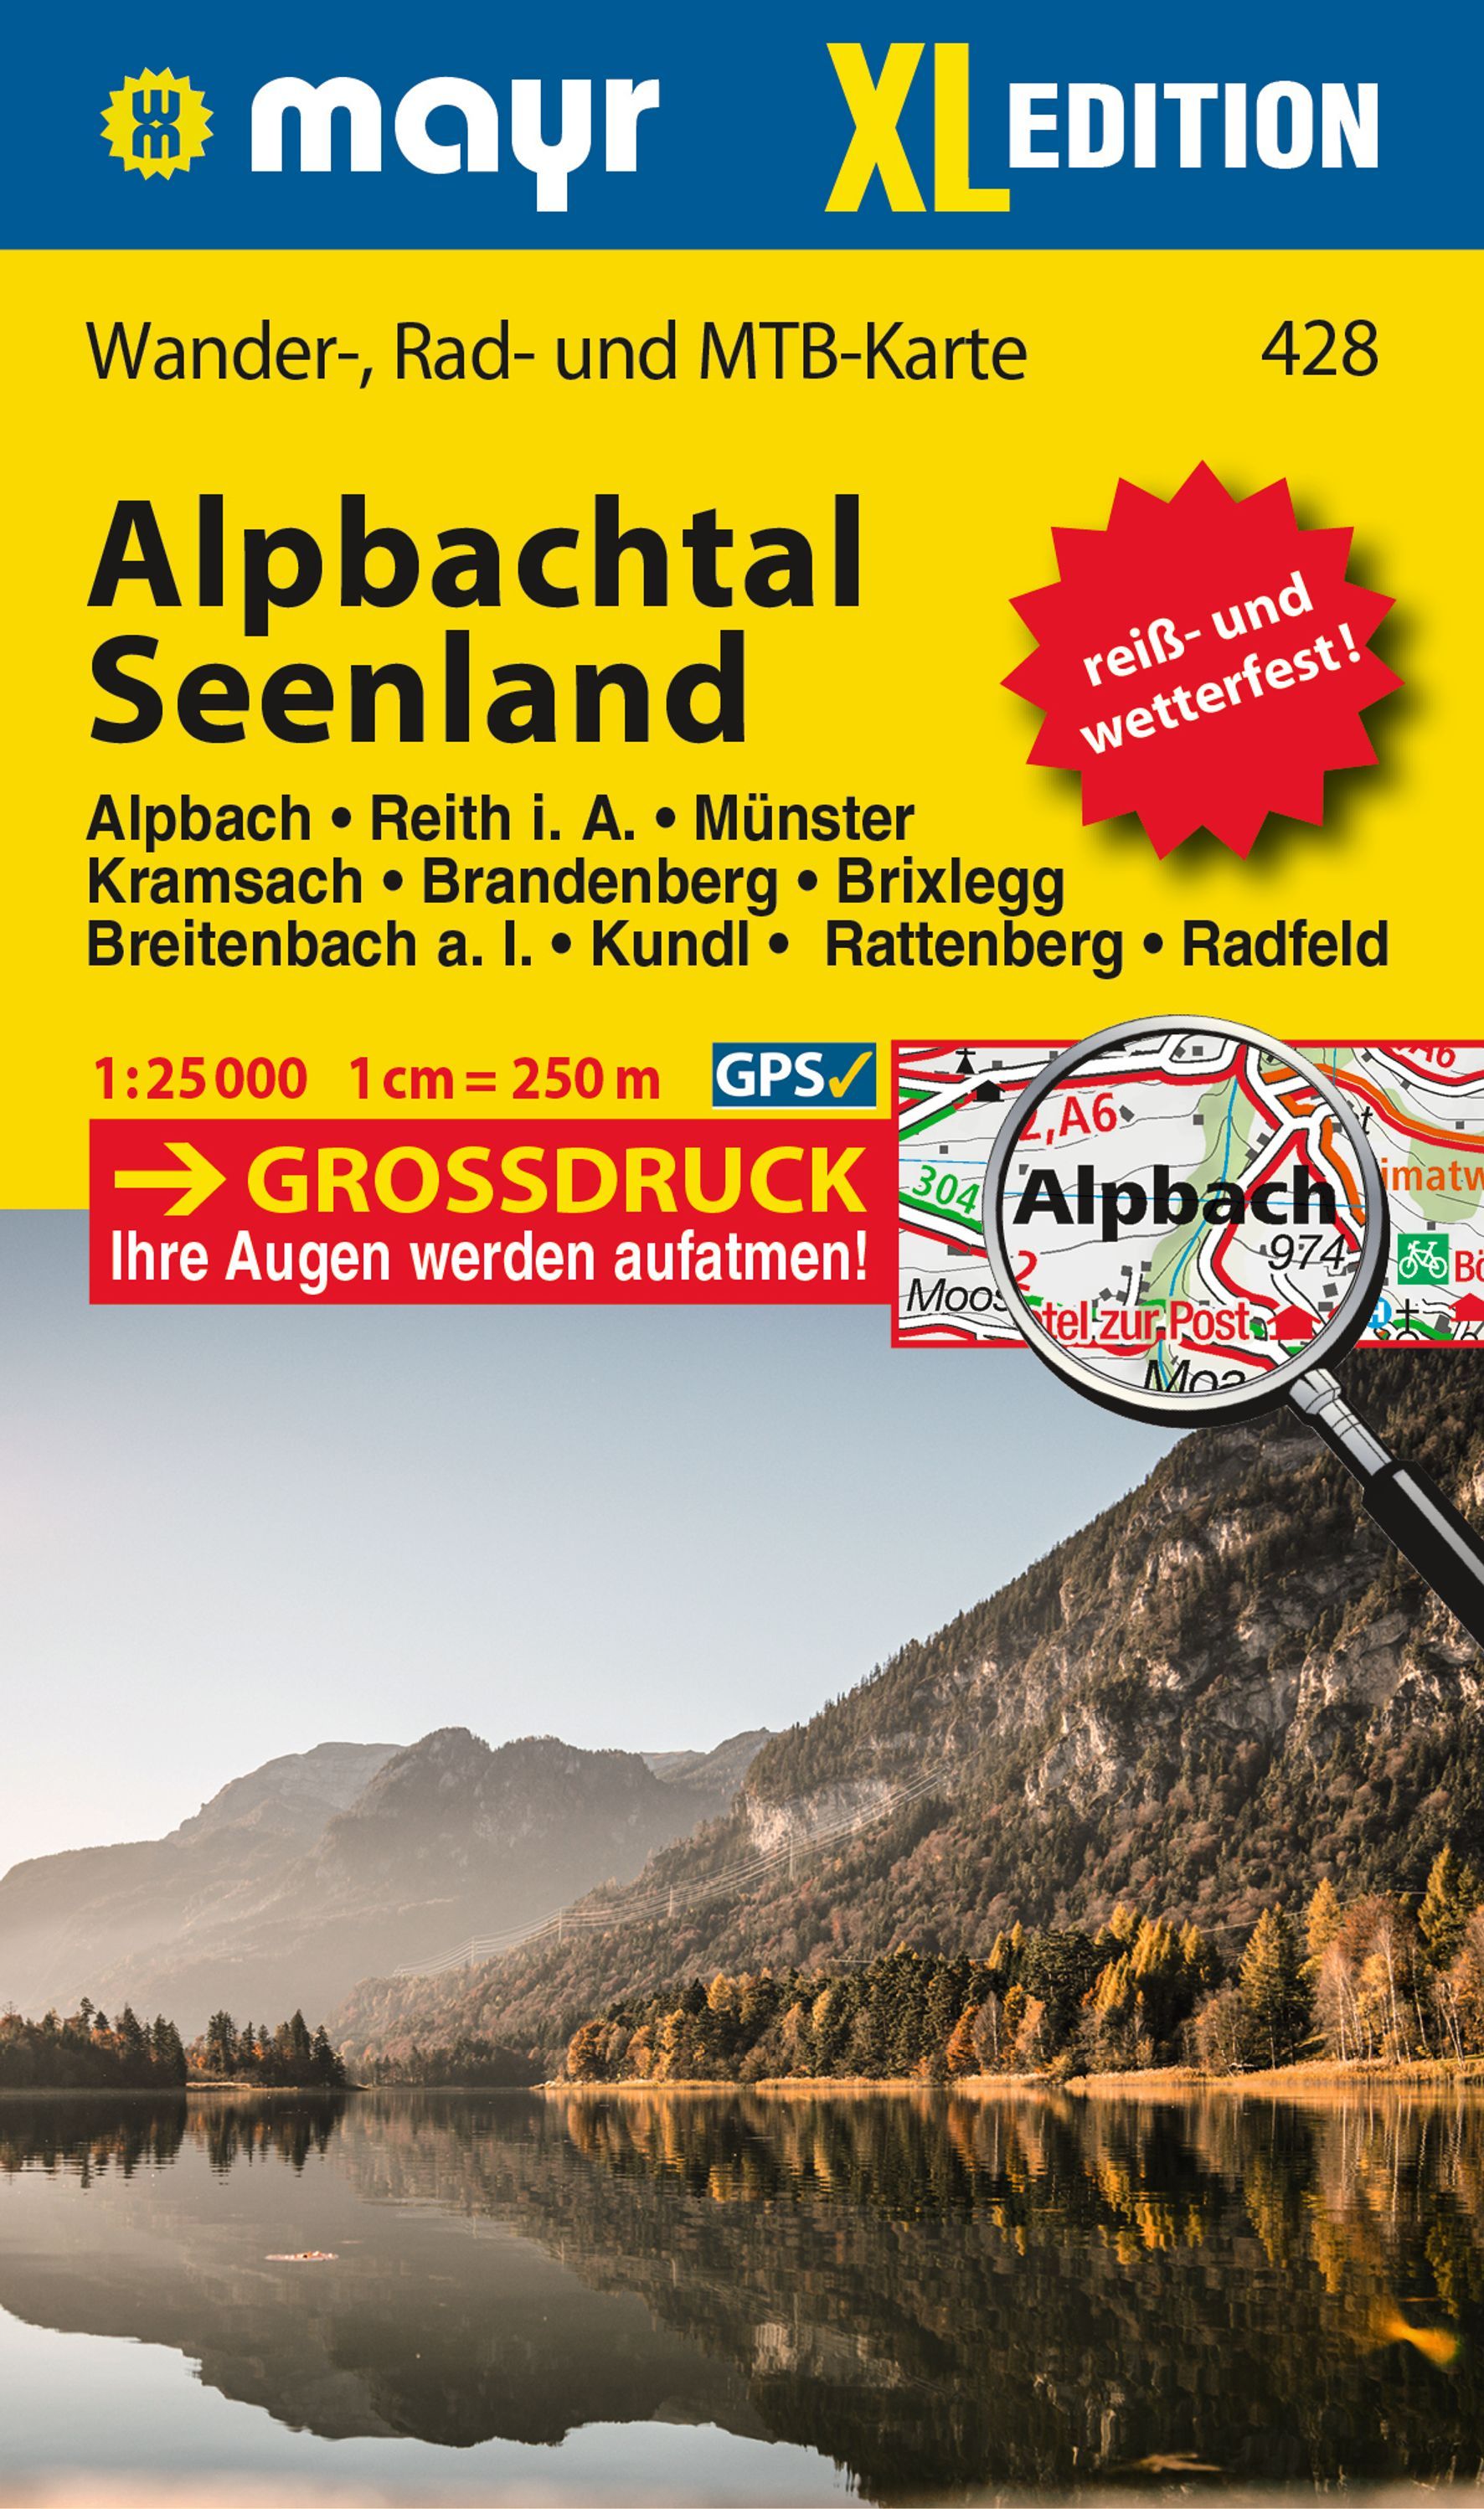 Online bestellen: Wandelkaart 428 XL Alpbachtal Seenland | Mayr